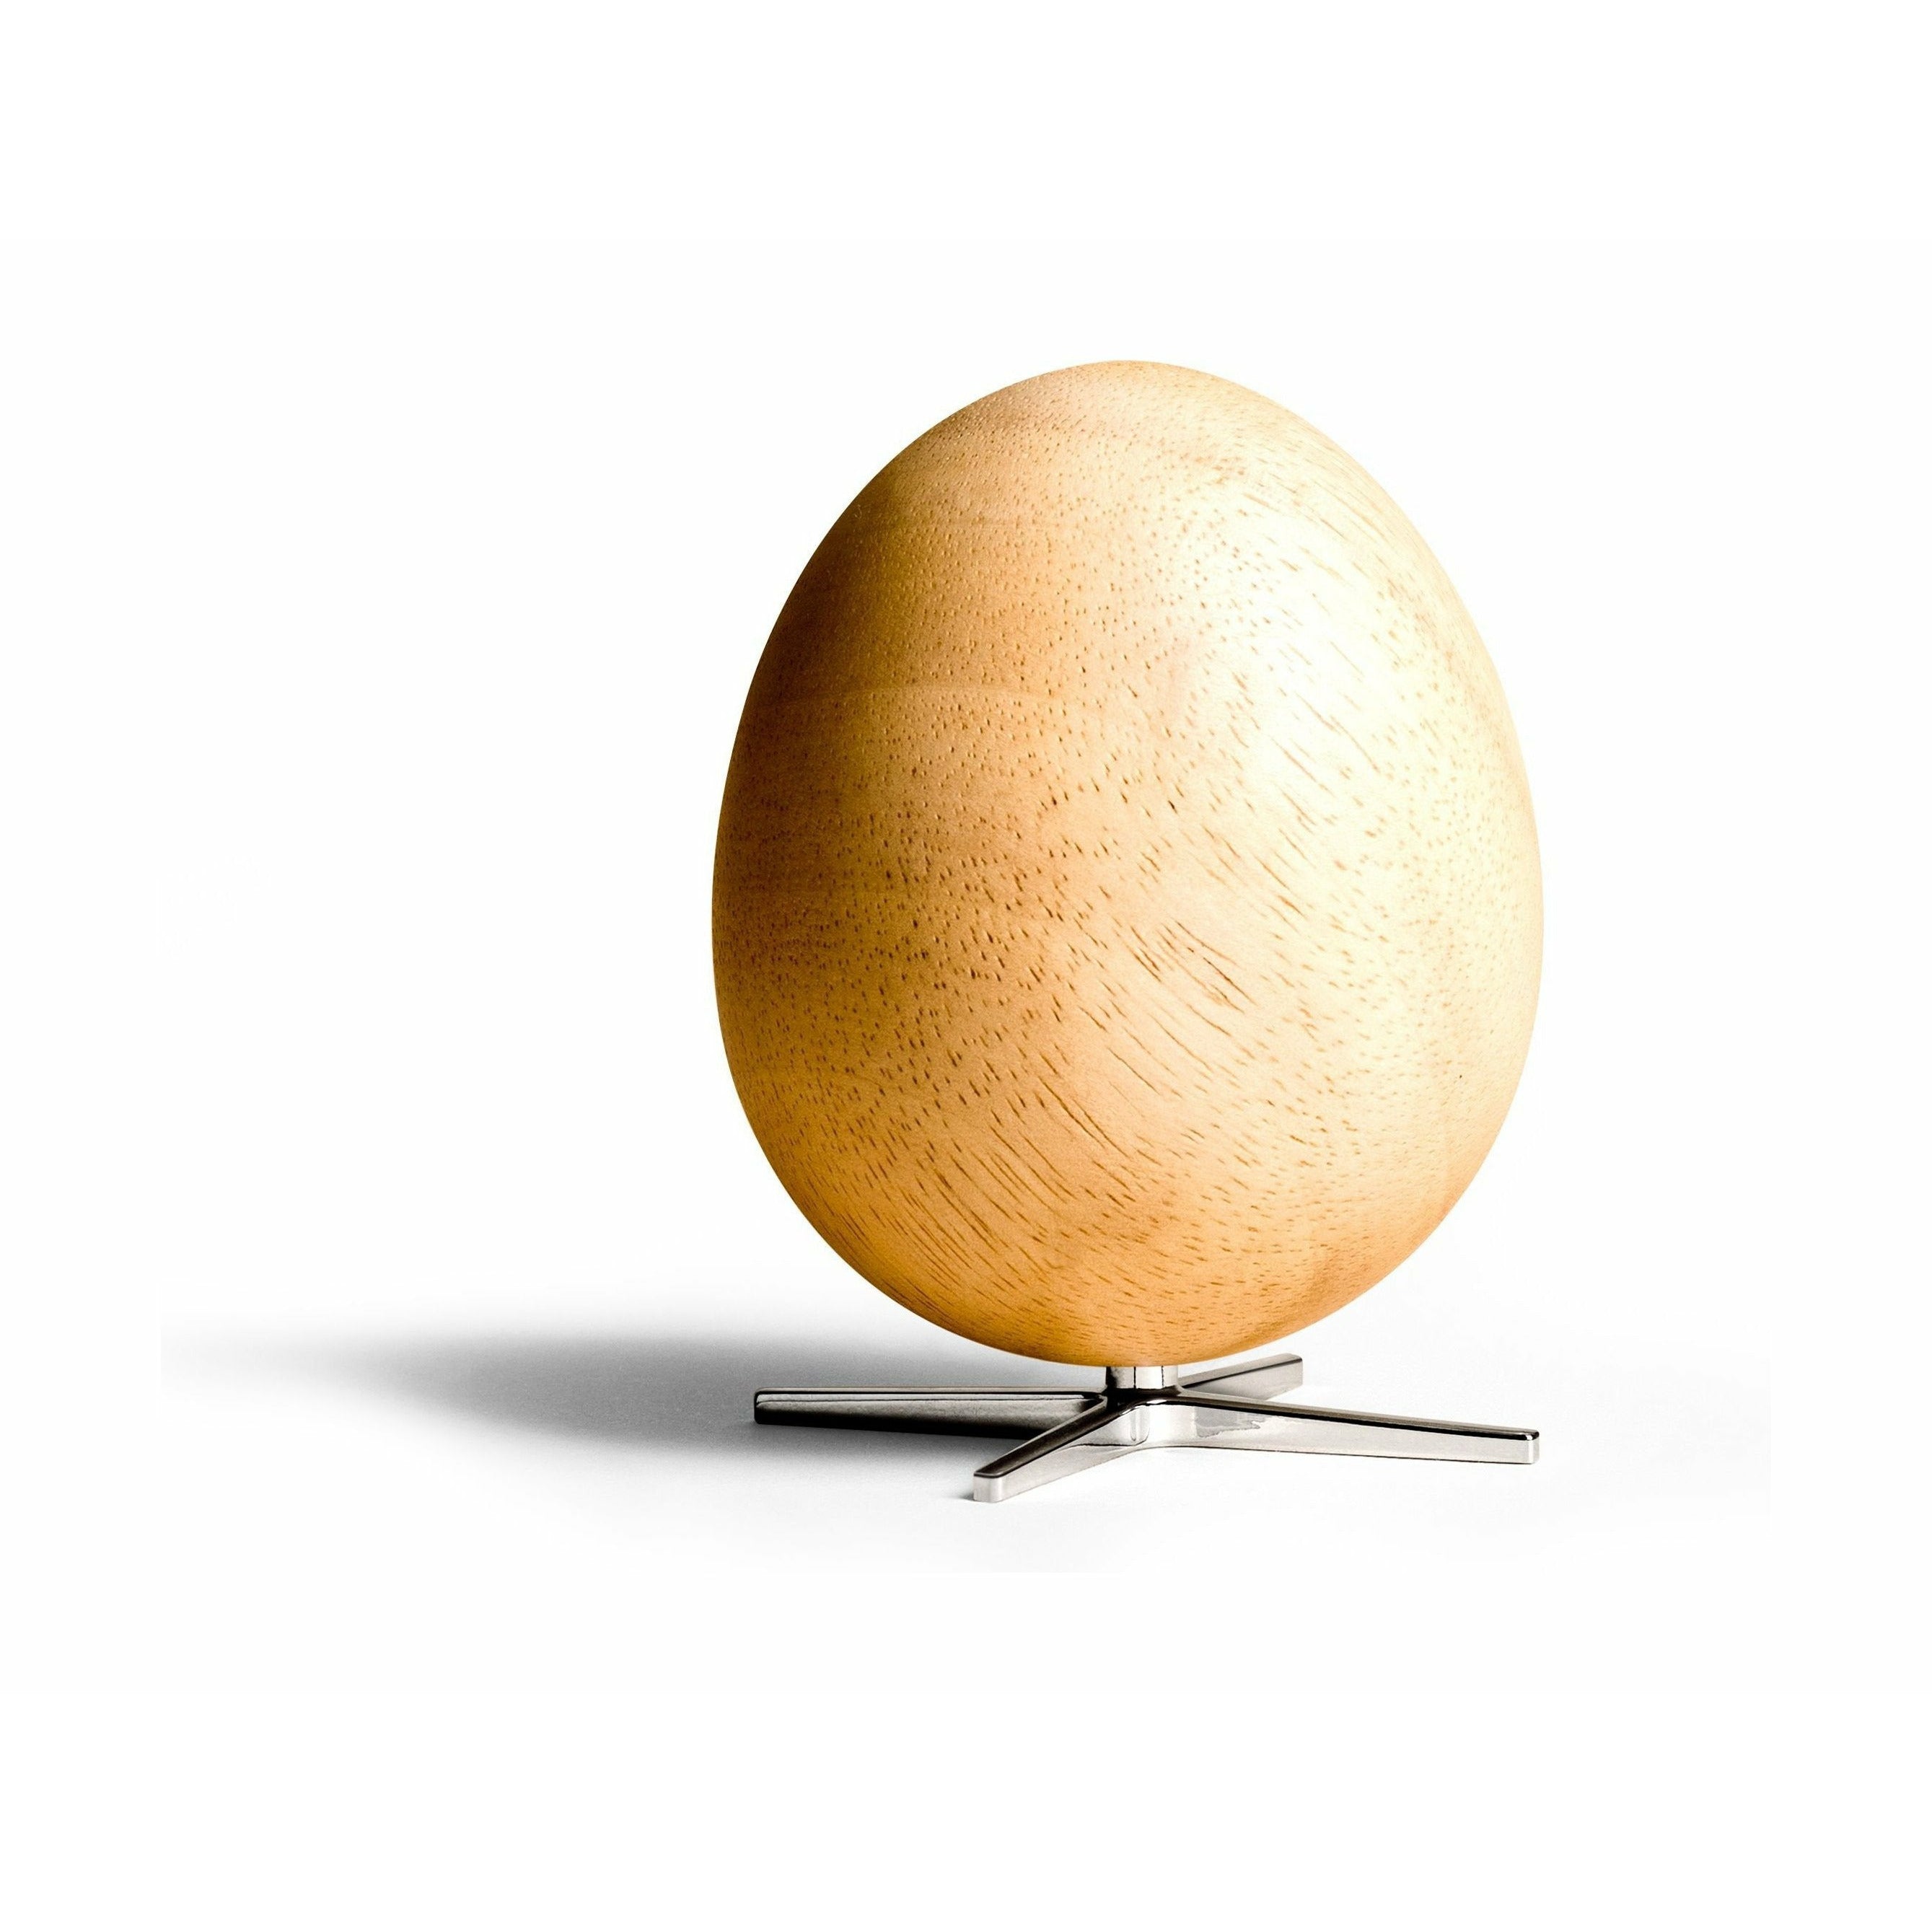 Branatura la figura in legno di uovo in quercia, piede di colore argento